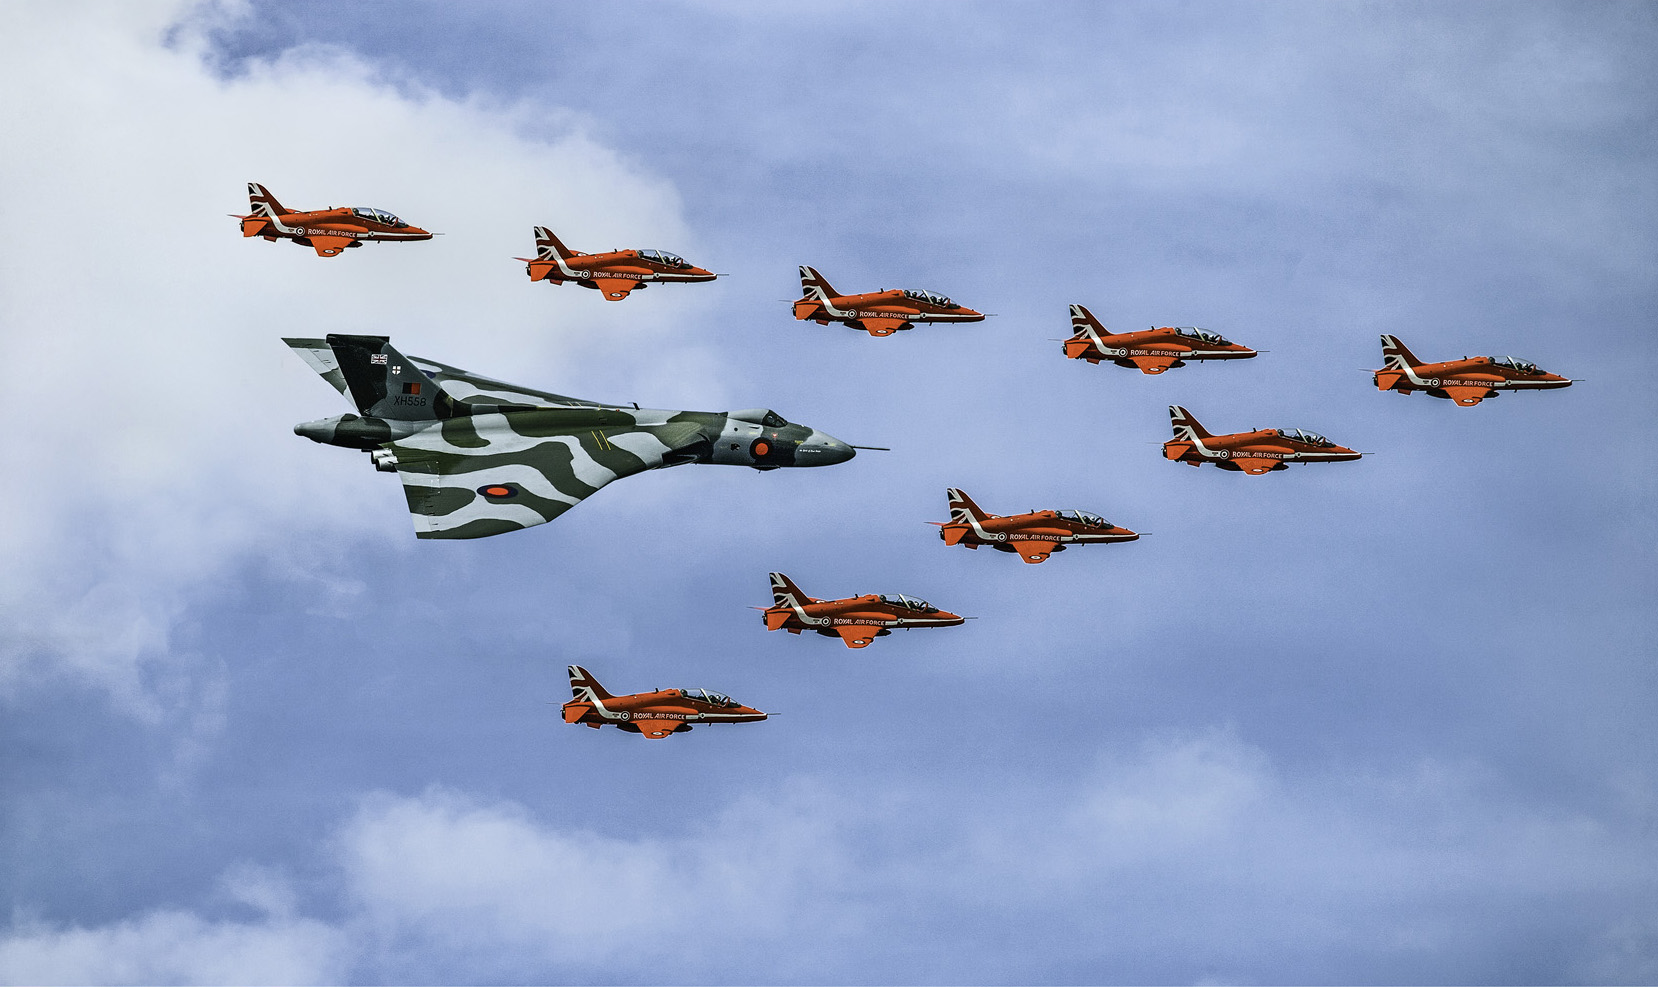 苍穹之舞-6 英国火神战斗机和英国空军红箭飞行表演队编队飞行.jpg